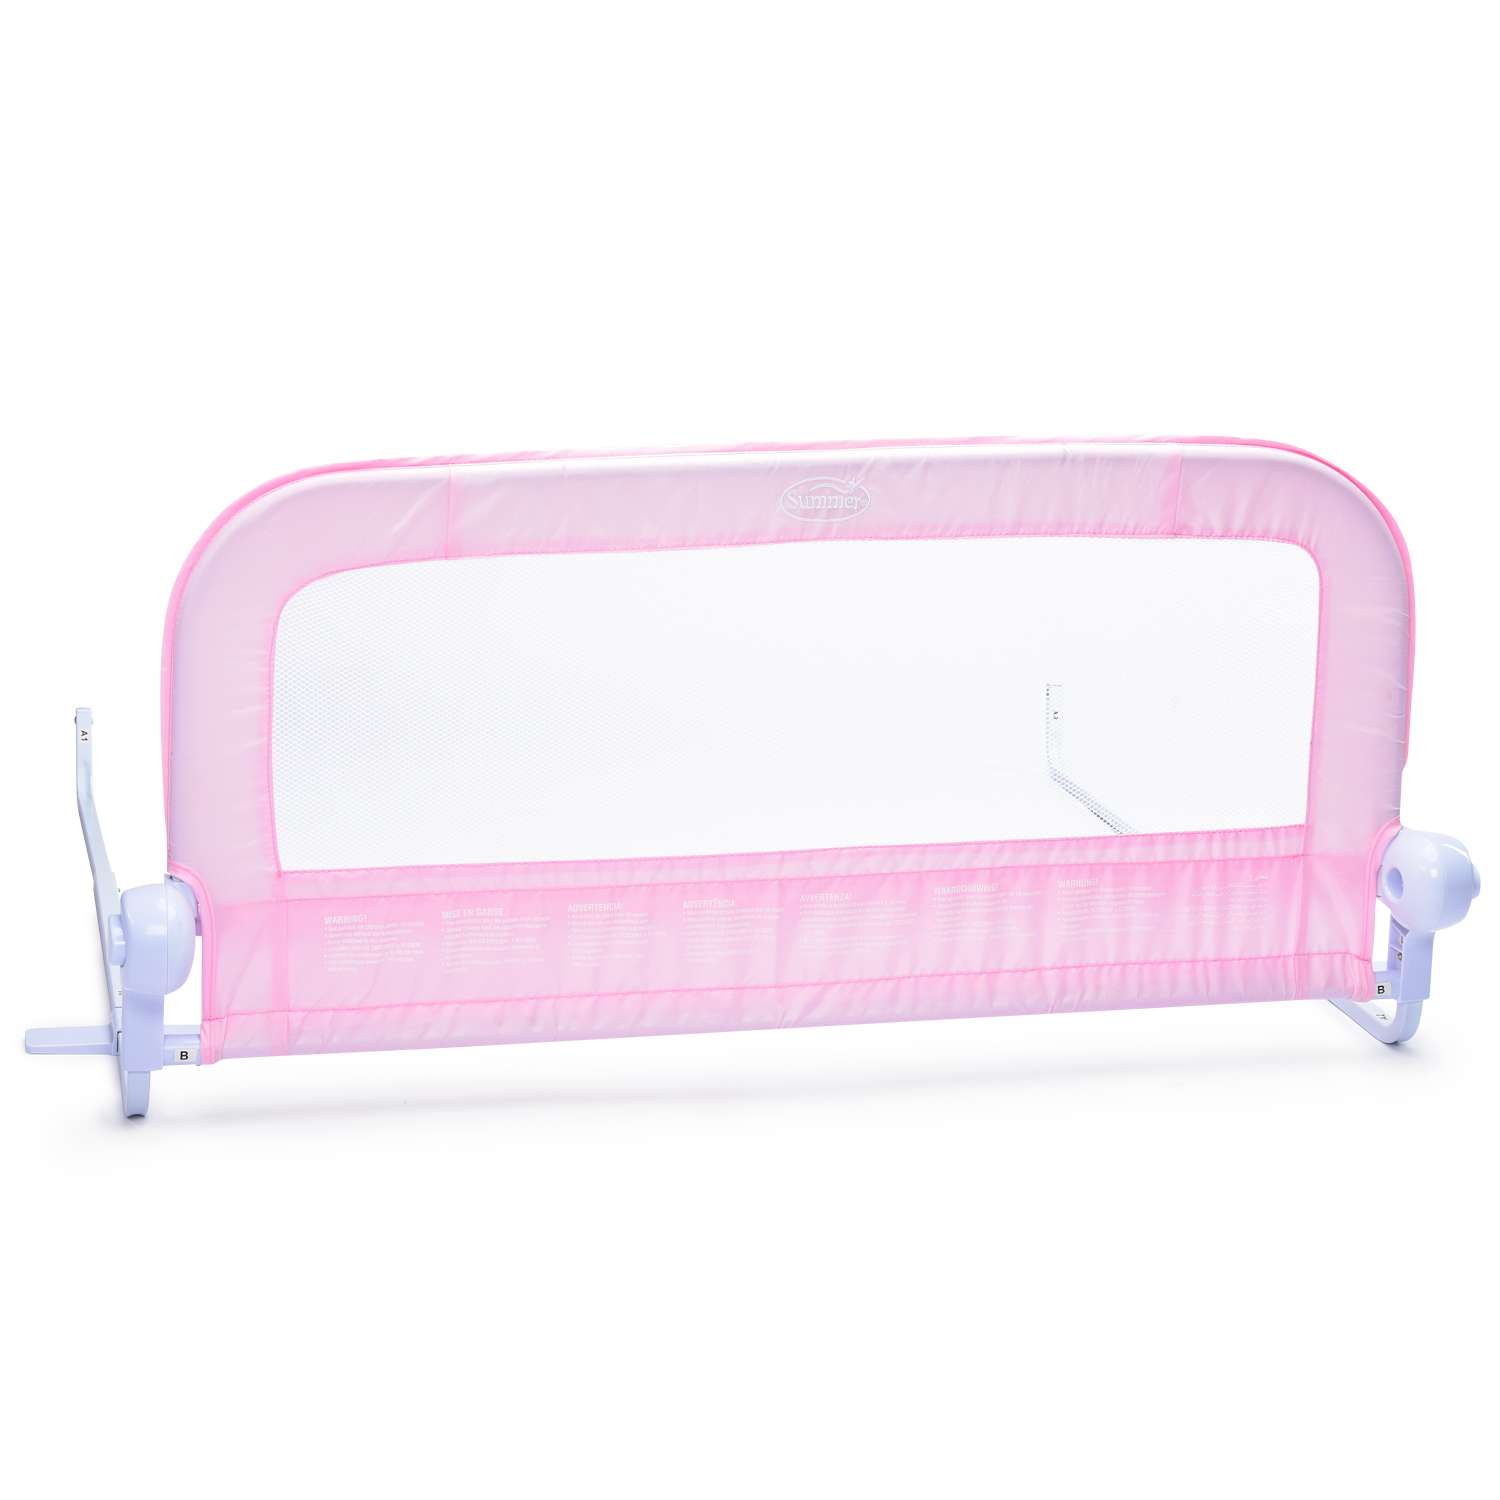 Ограничитель для кровати Summer Infant Single Fold Bedrail Розовый - фото 1